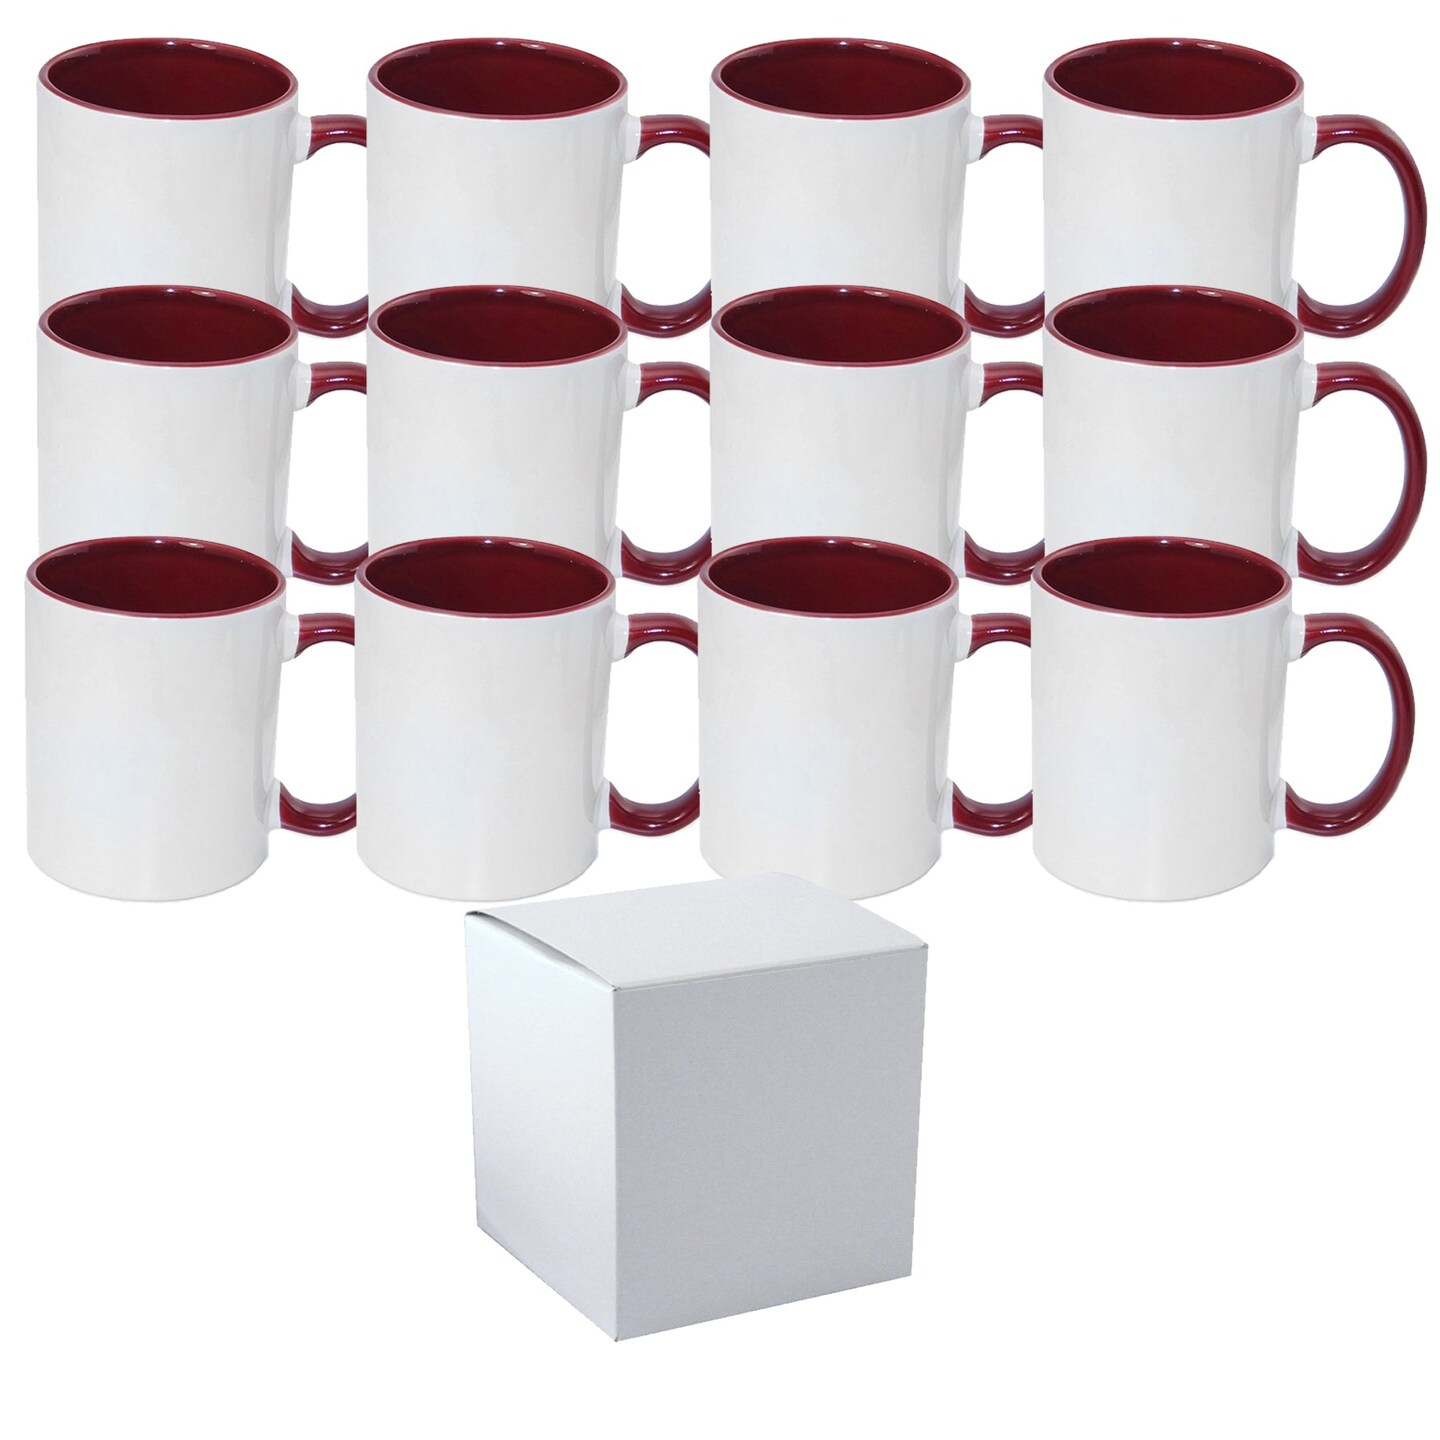 Buy Sublimation Coffee mugs Sublimation mugs 11 oz Sublimation